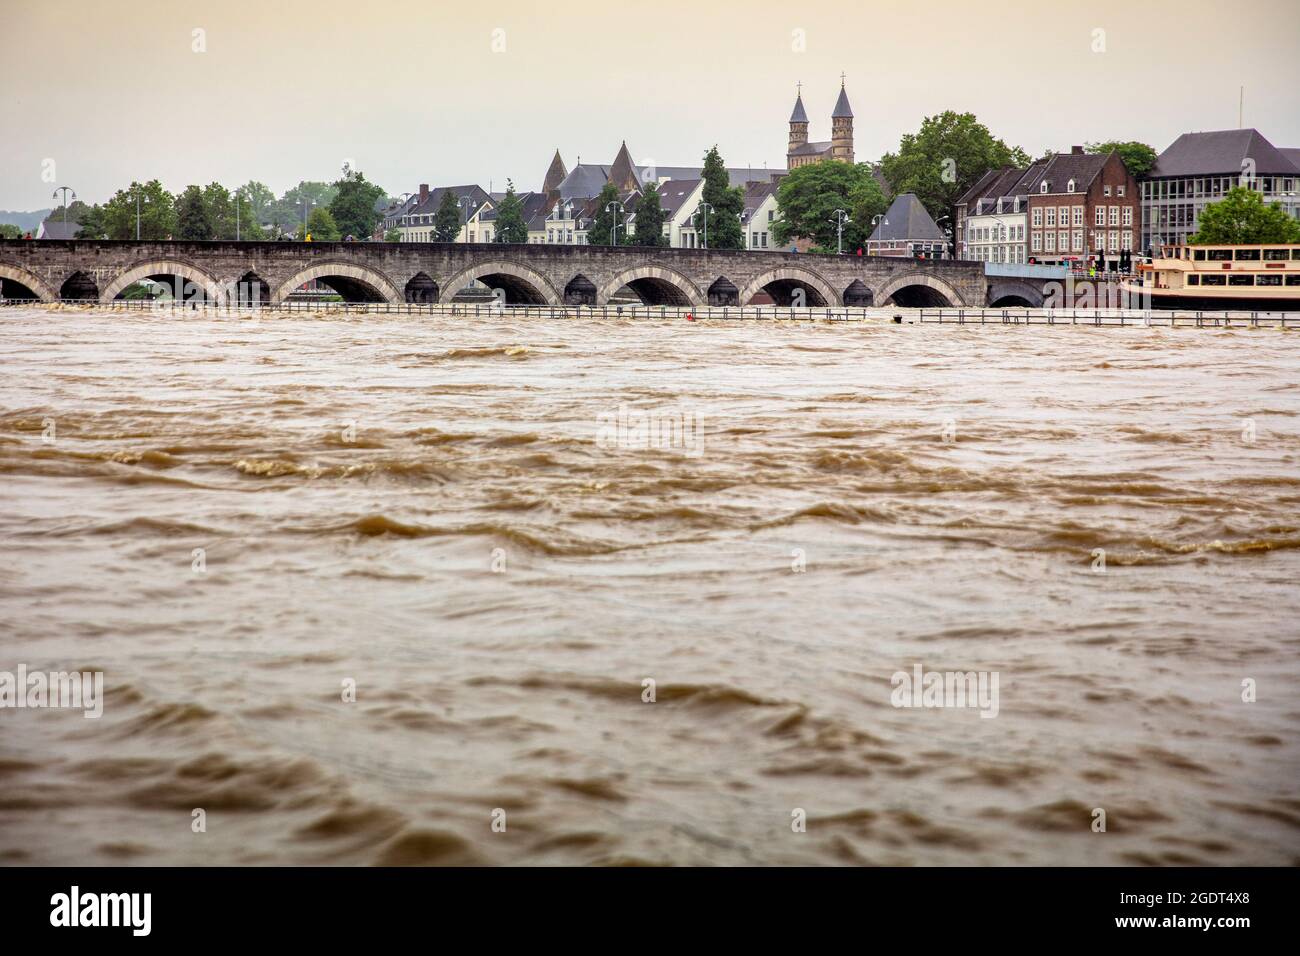 Die Niederlande, Maastricht, Maas und Blick auf das Stadtzentrum. St Servaas Brücke. Hoher Wasserstand. Stockfoto